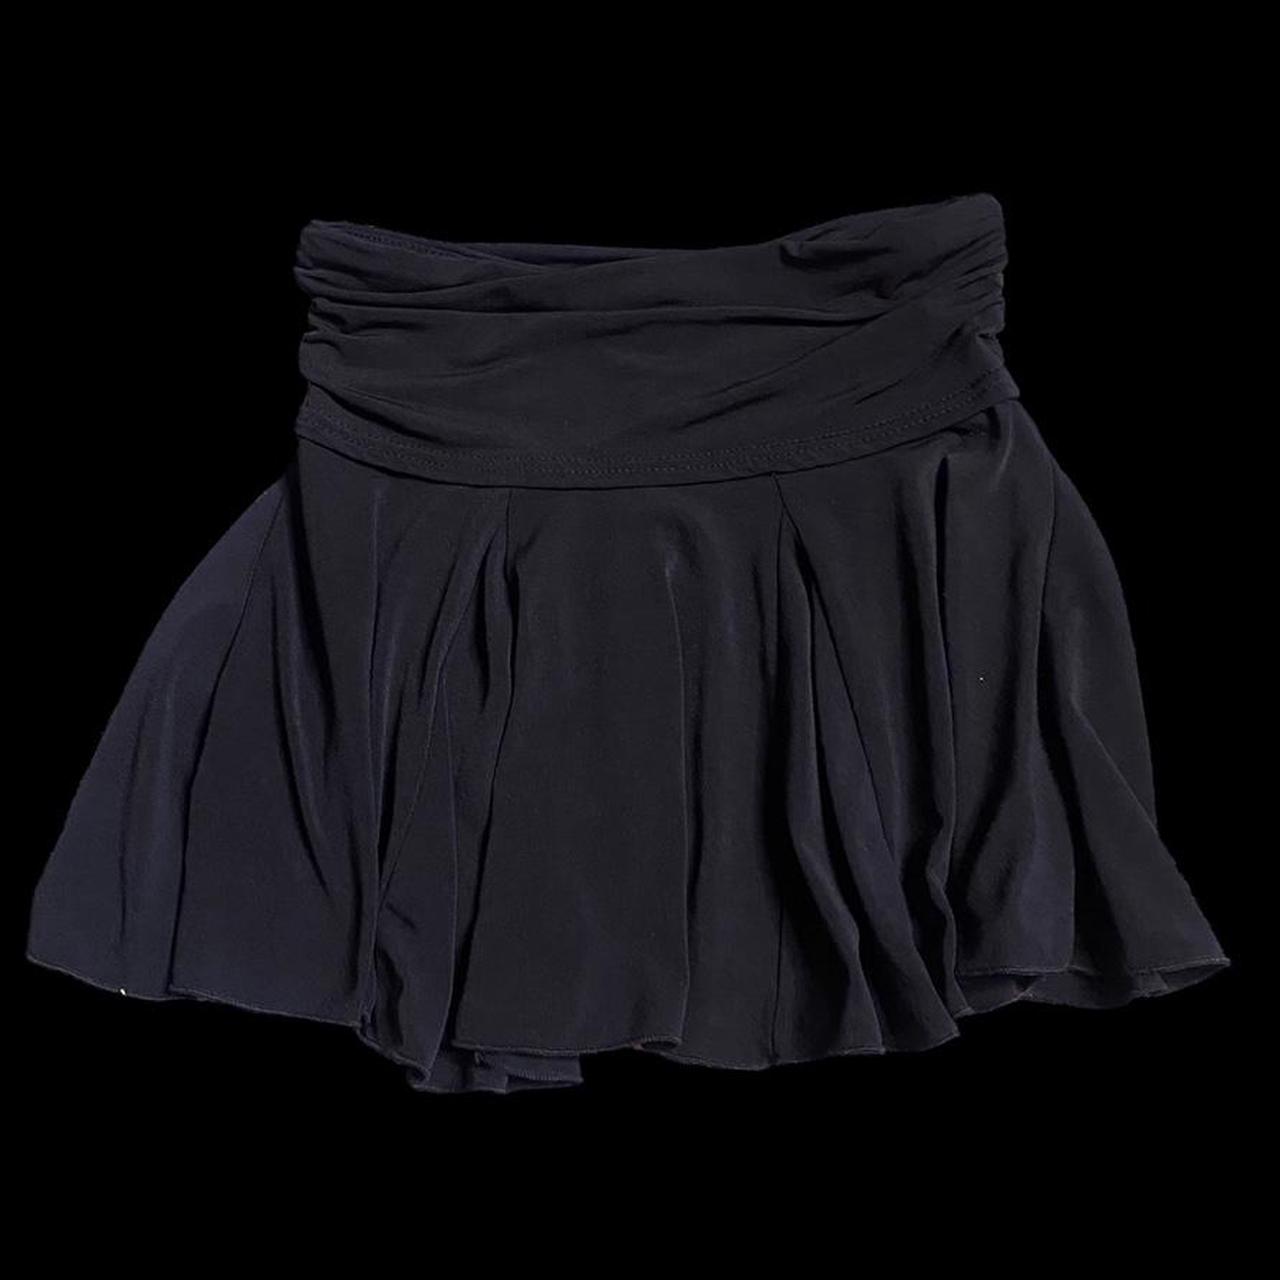 Evans Women's Black Skirt